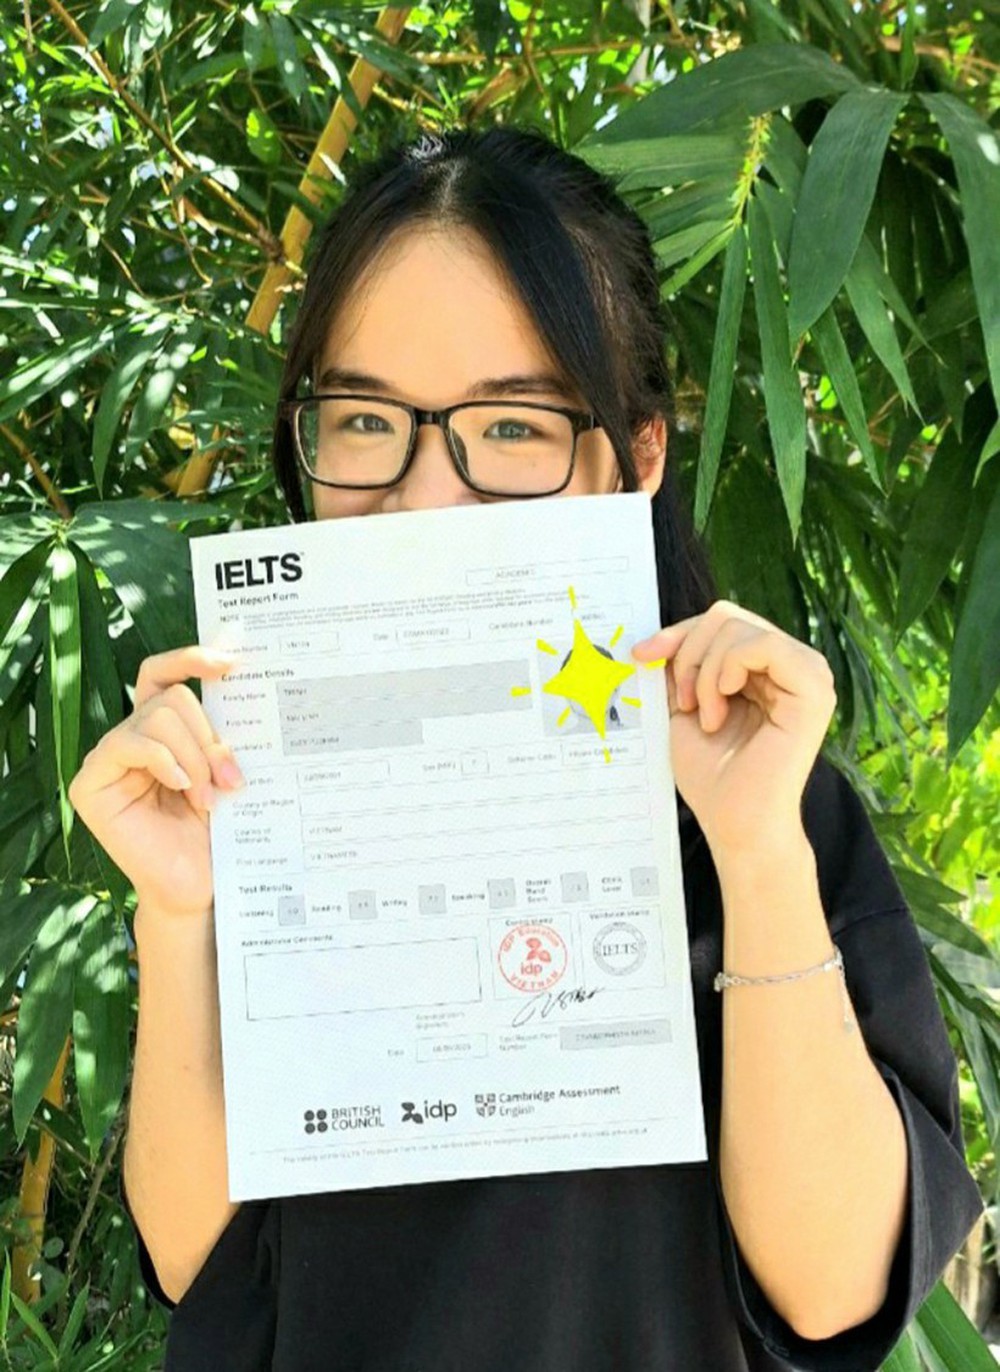 Nữ sinh trường huyện ở Thanh Hóa đạt IELTS 7.5 nhờ tự học - Ảnh 1.